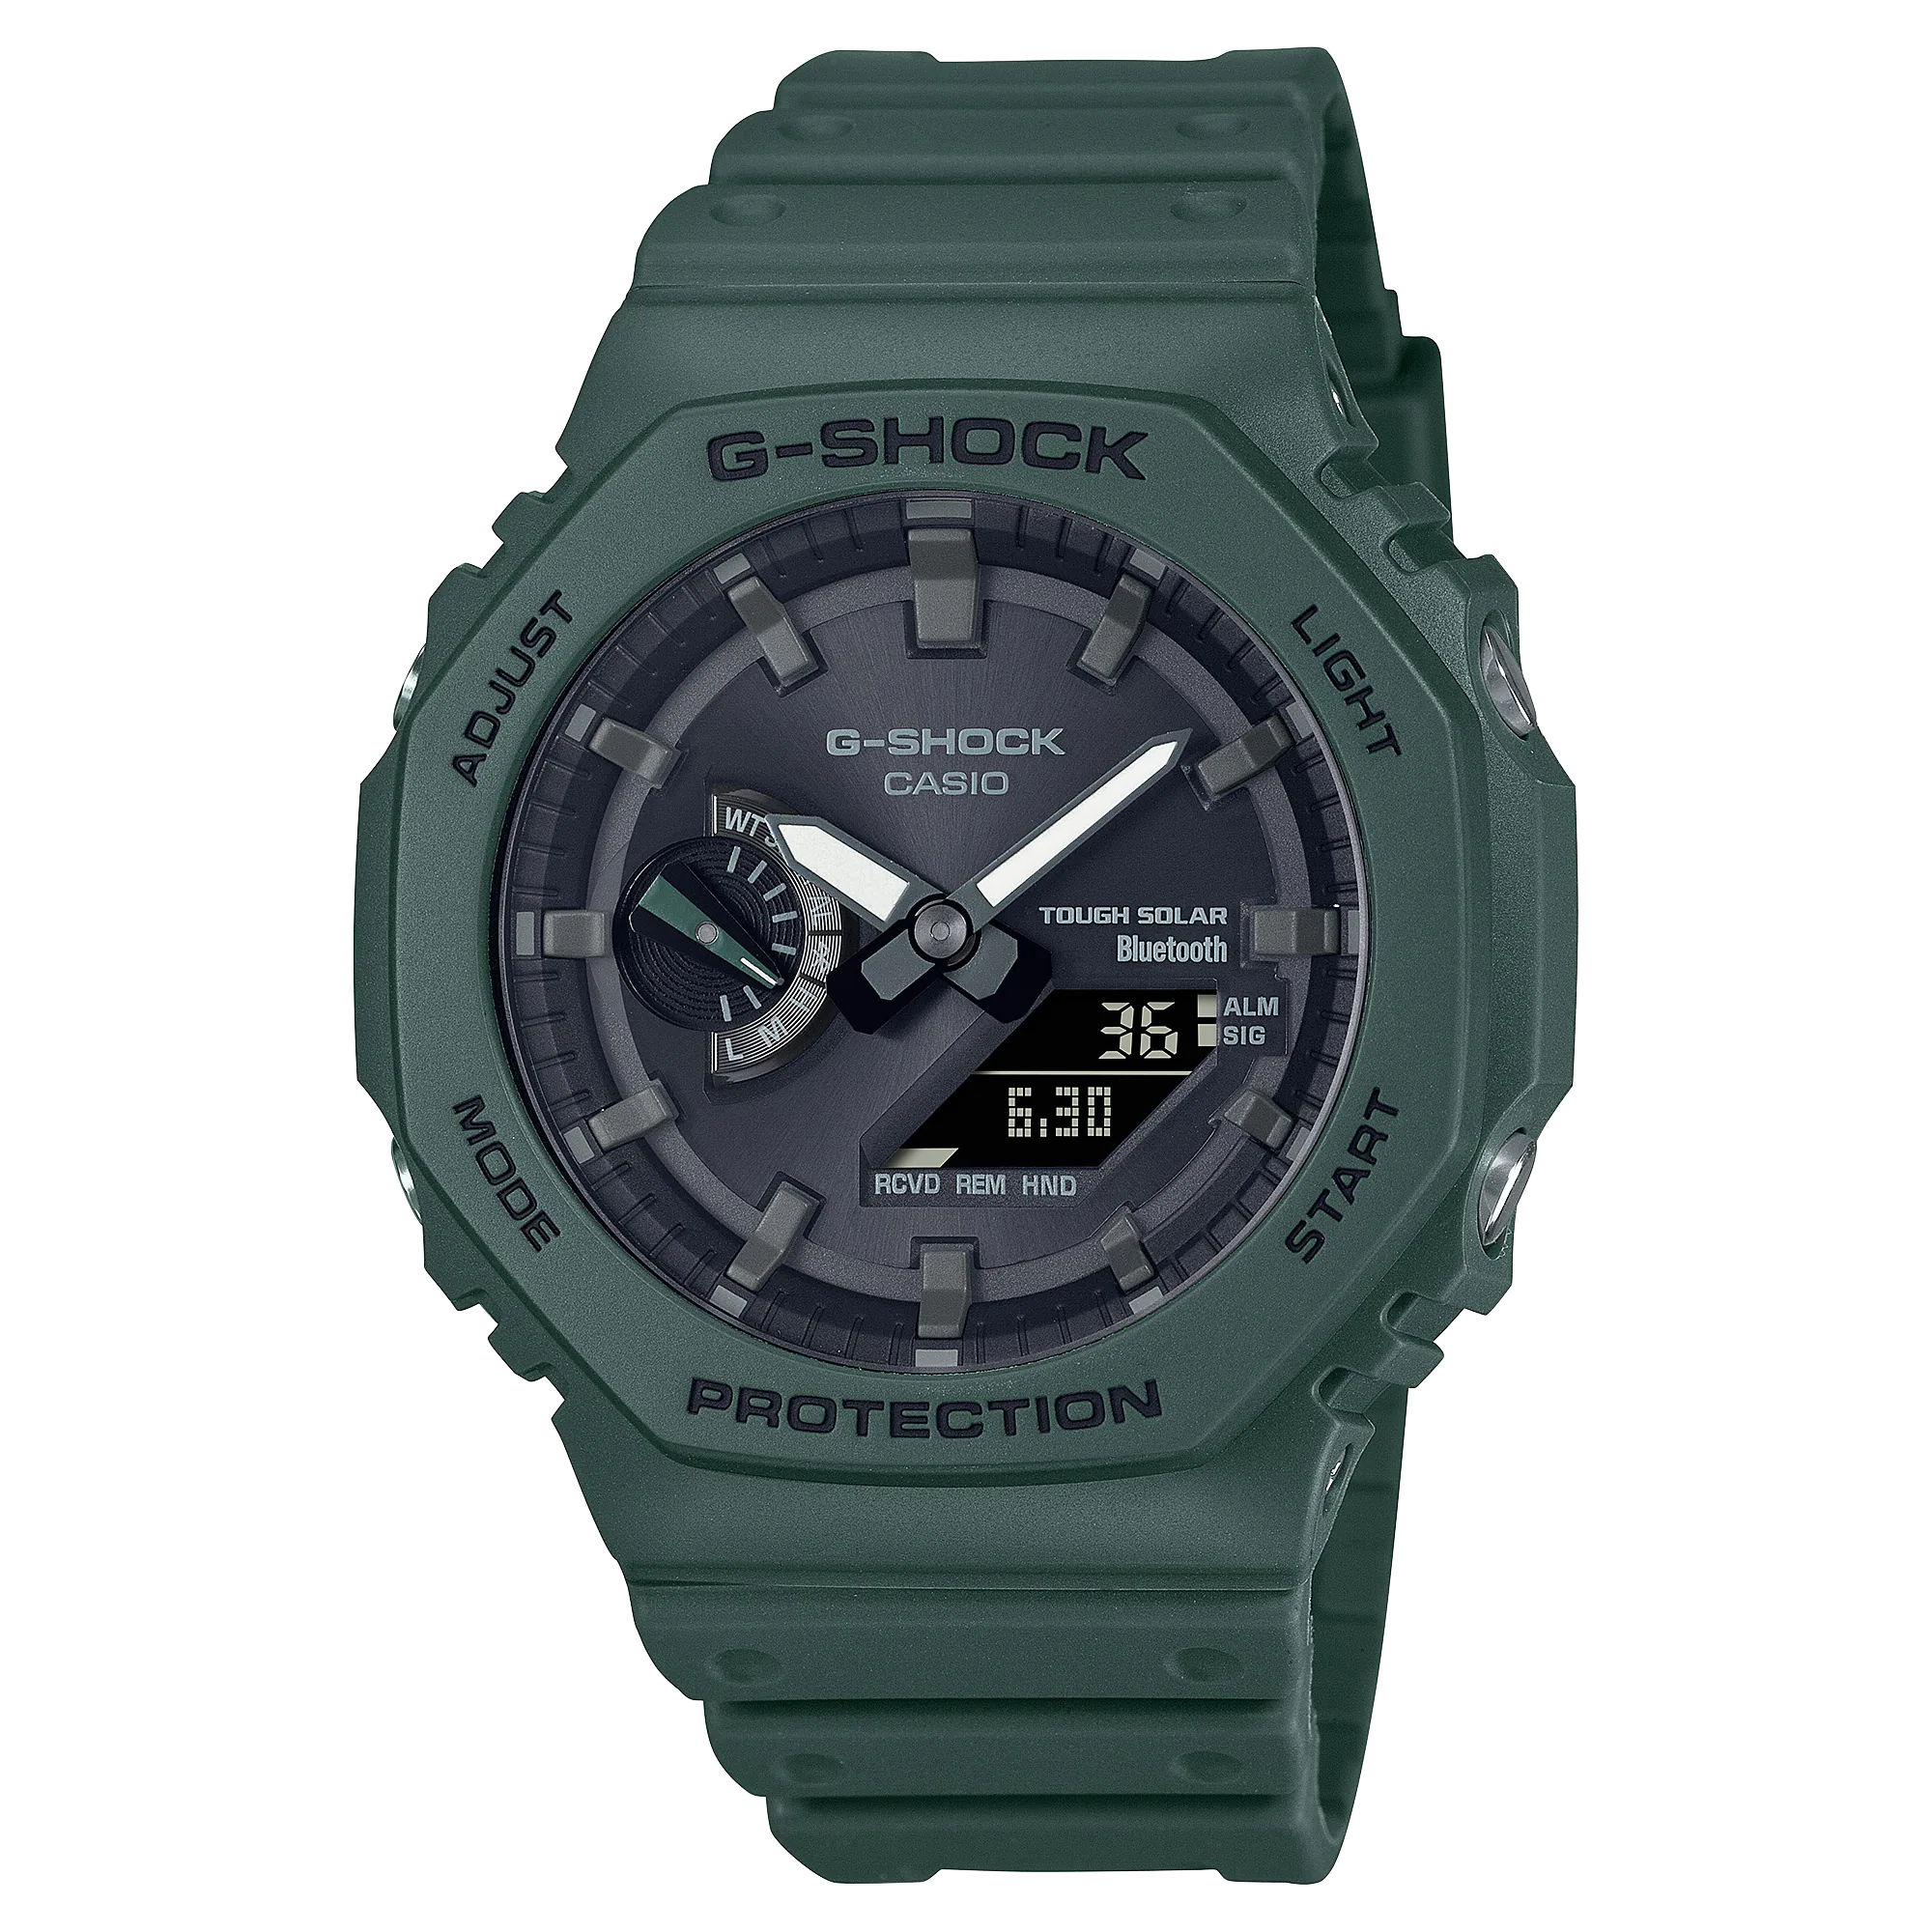 Casio Watch G-SHOCK B2100 Solar Green